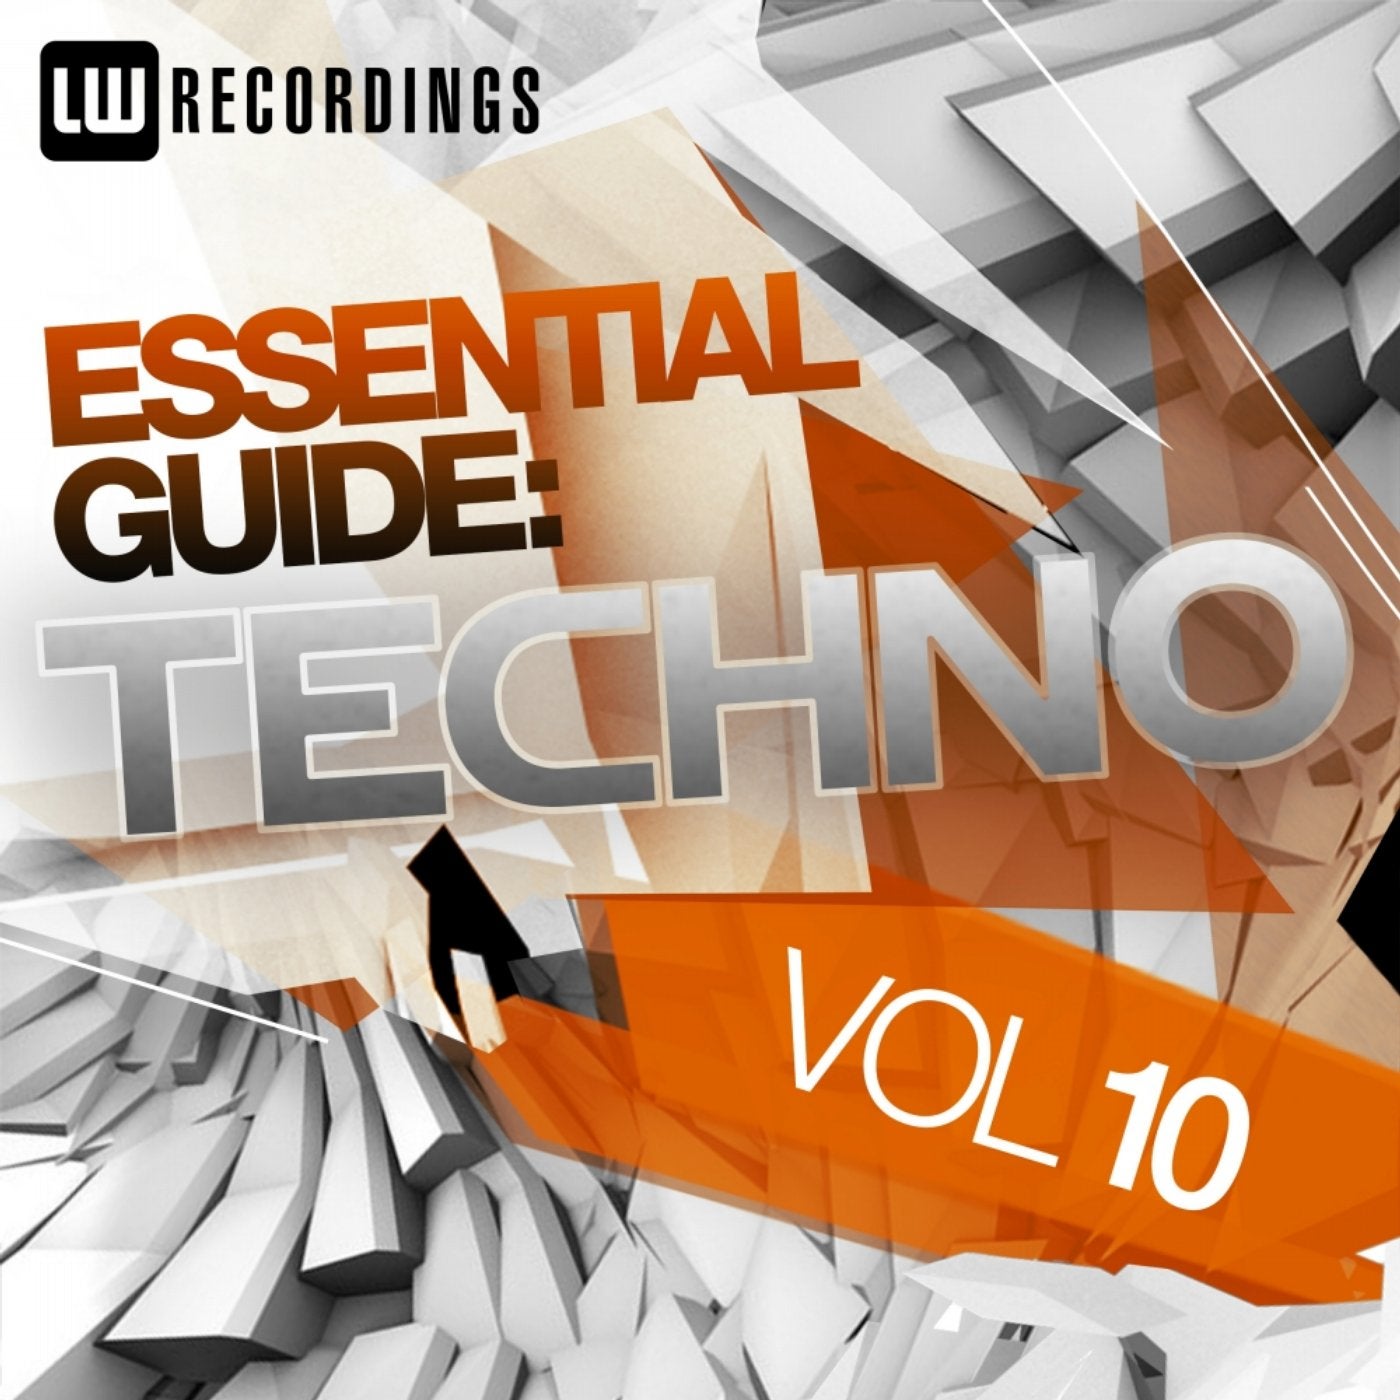 Essential Guide: Techno, Vol. 10